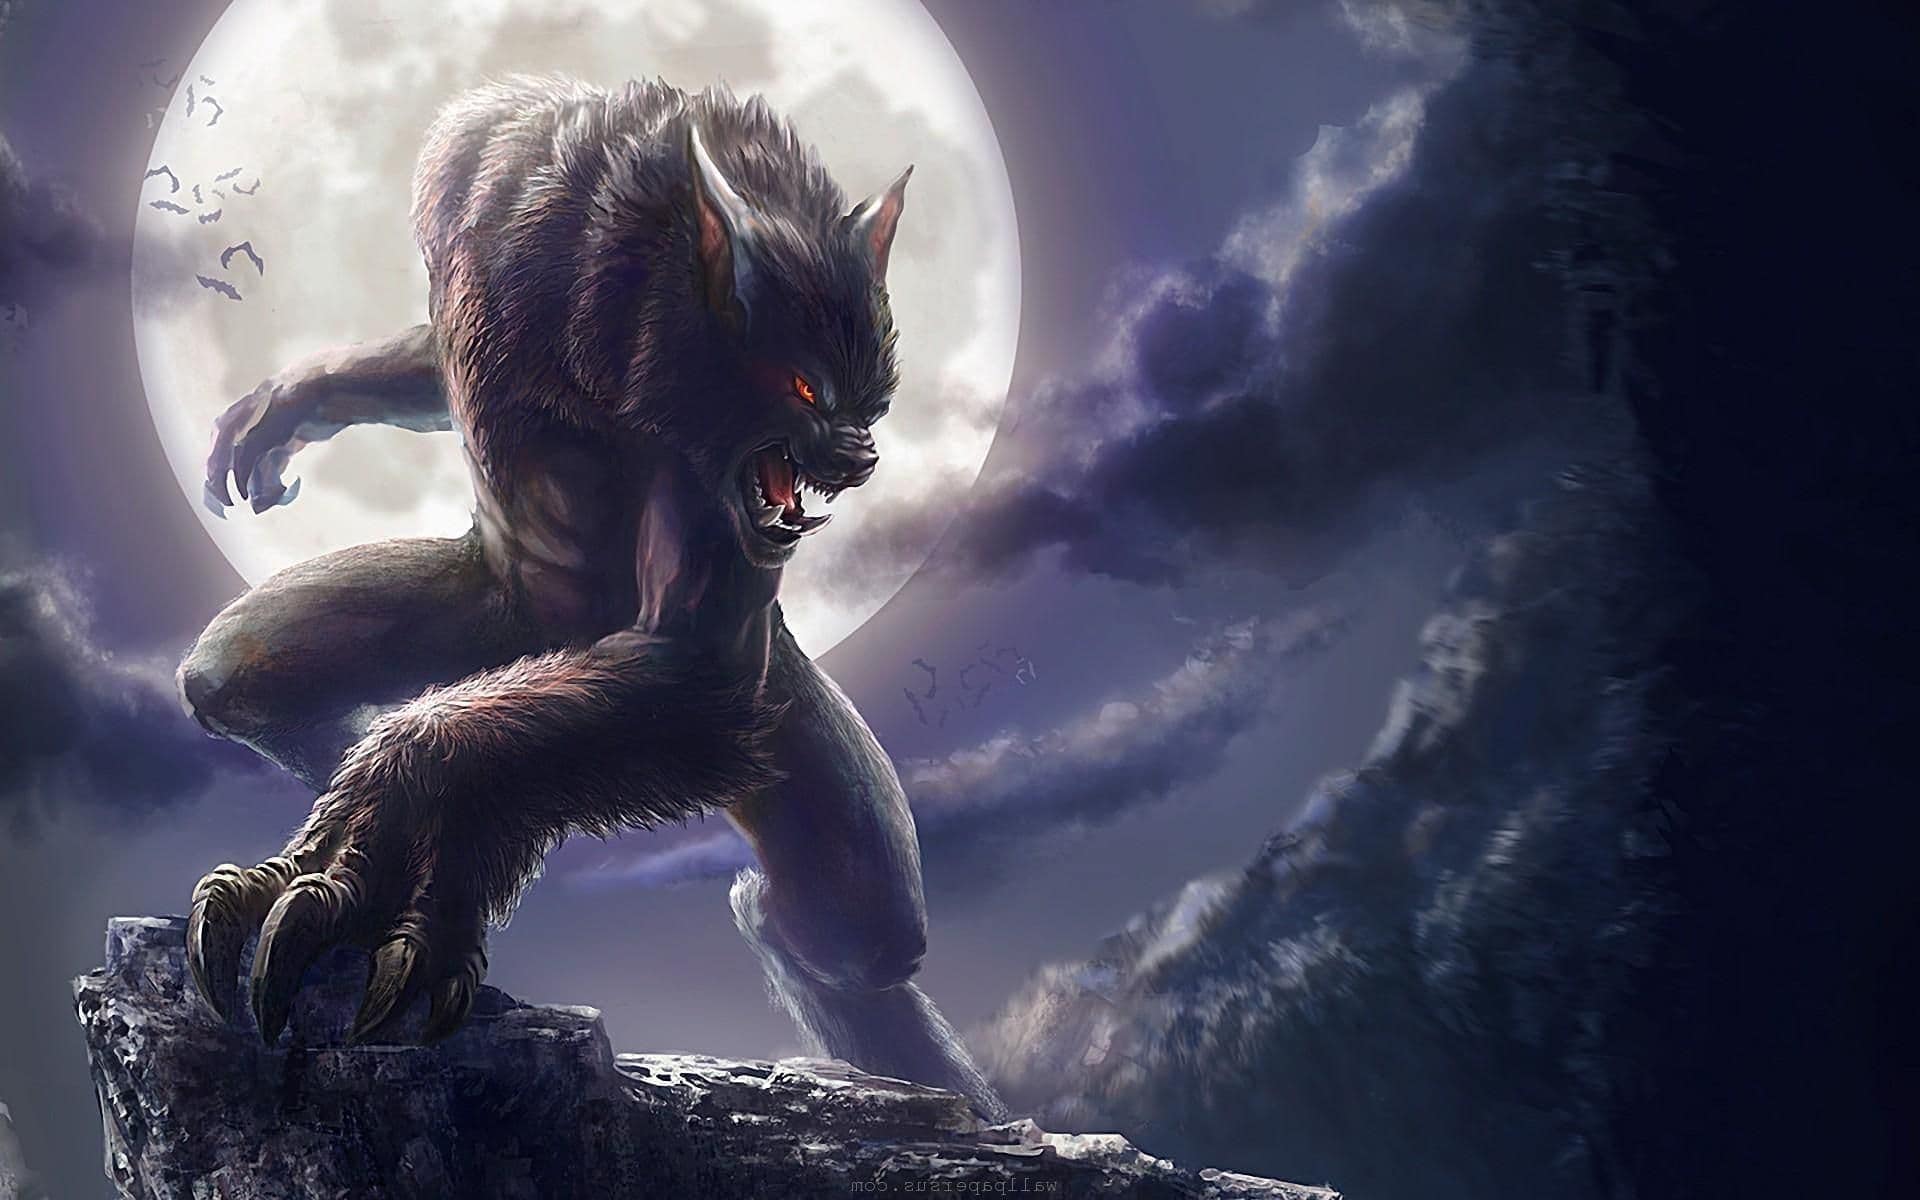 werewolf dream meaning, dream about werewolf, werewolf dream interpretation, seeing in a dream werewolf